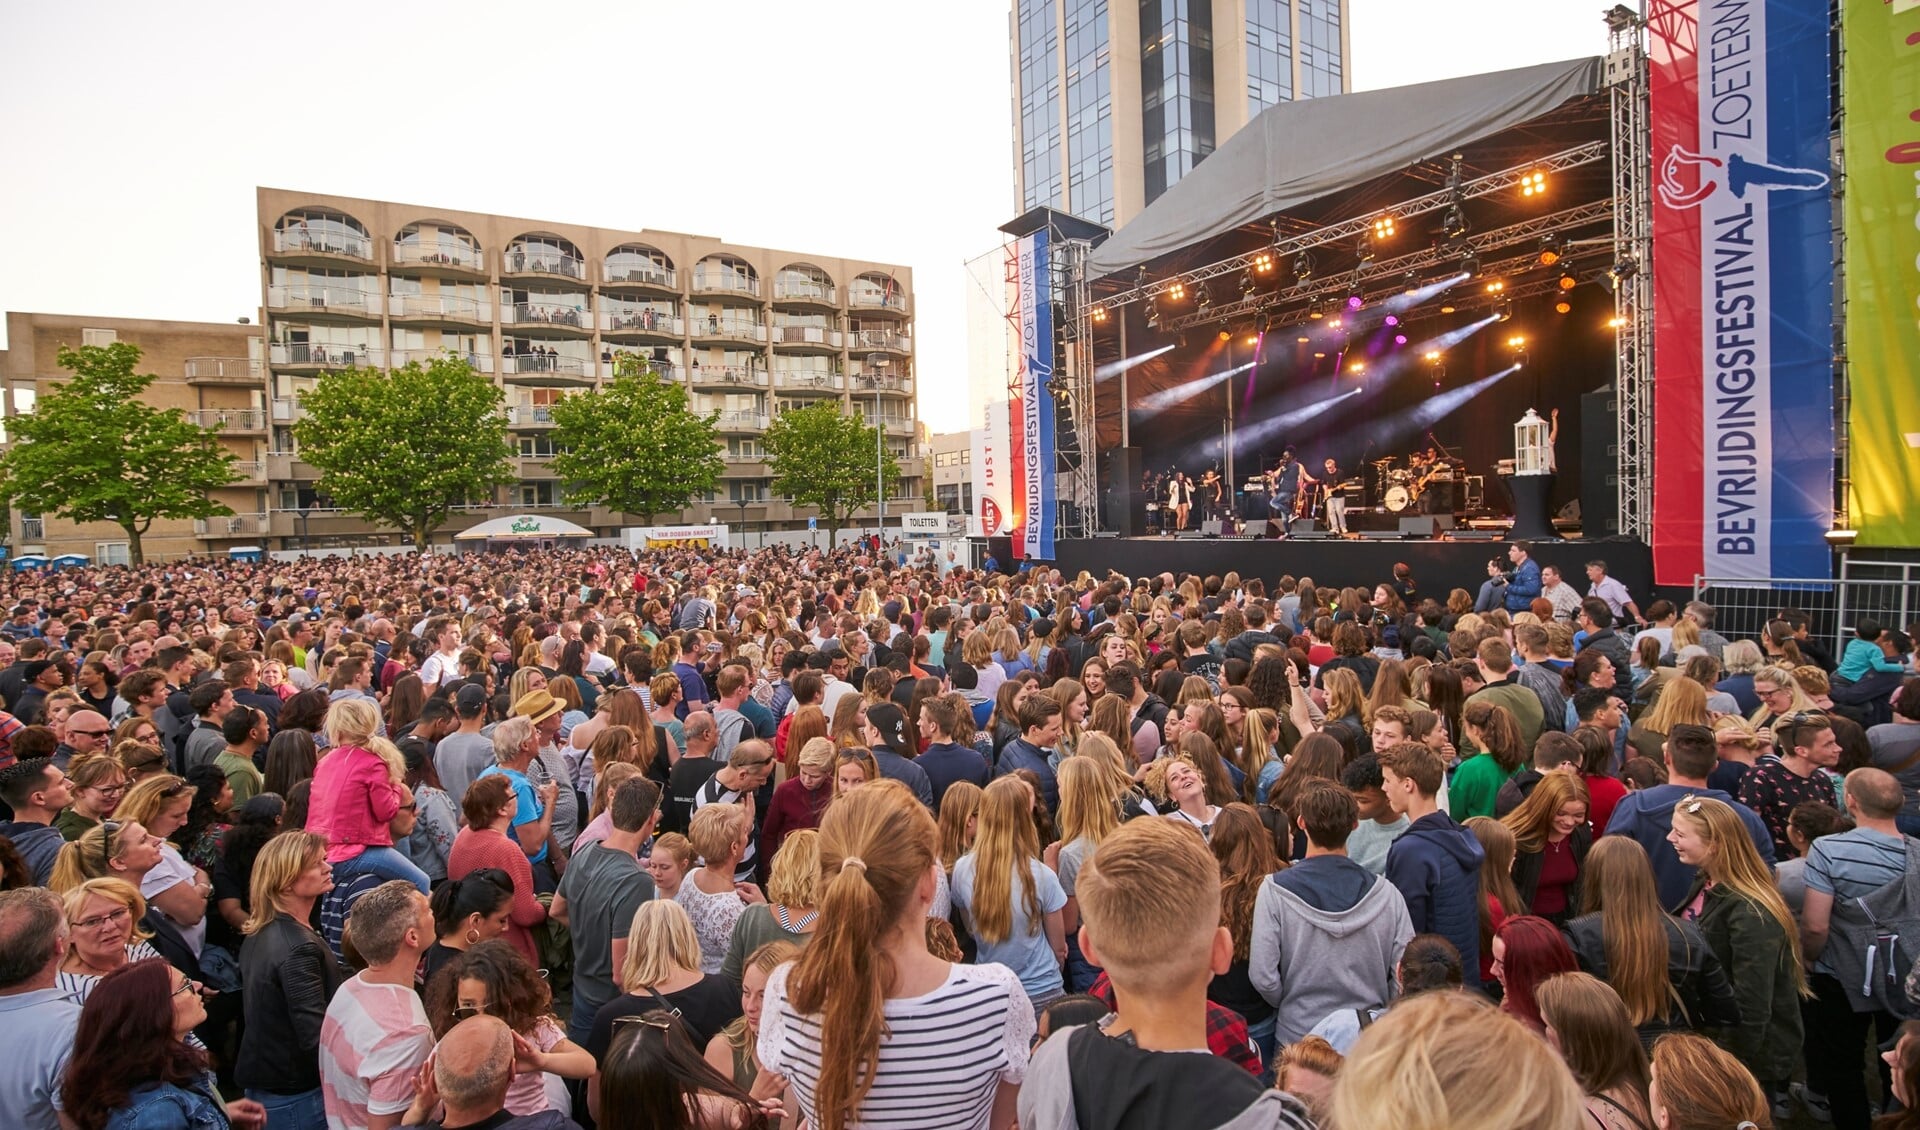 Bevrijdingsfestival in 2018. Foto: Ardito/Jan-Evert Zondag